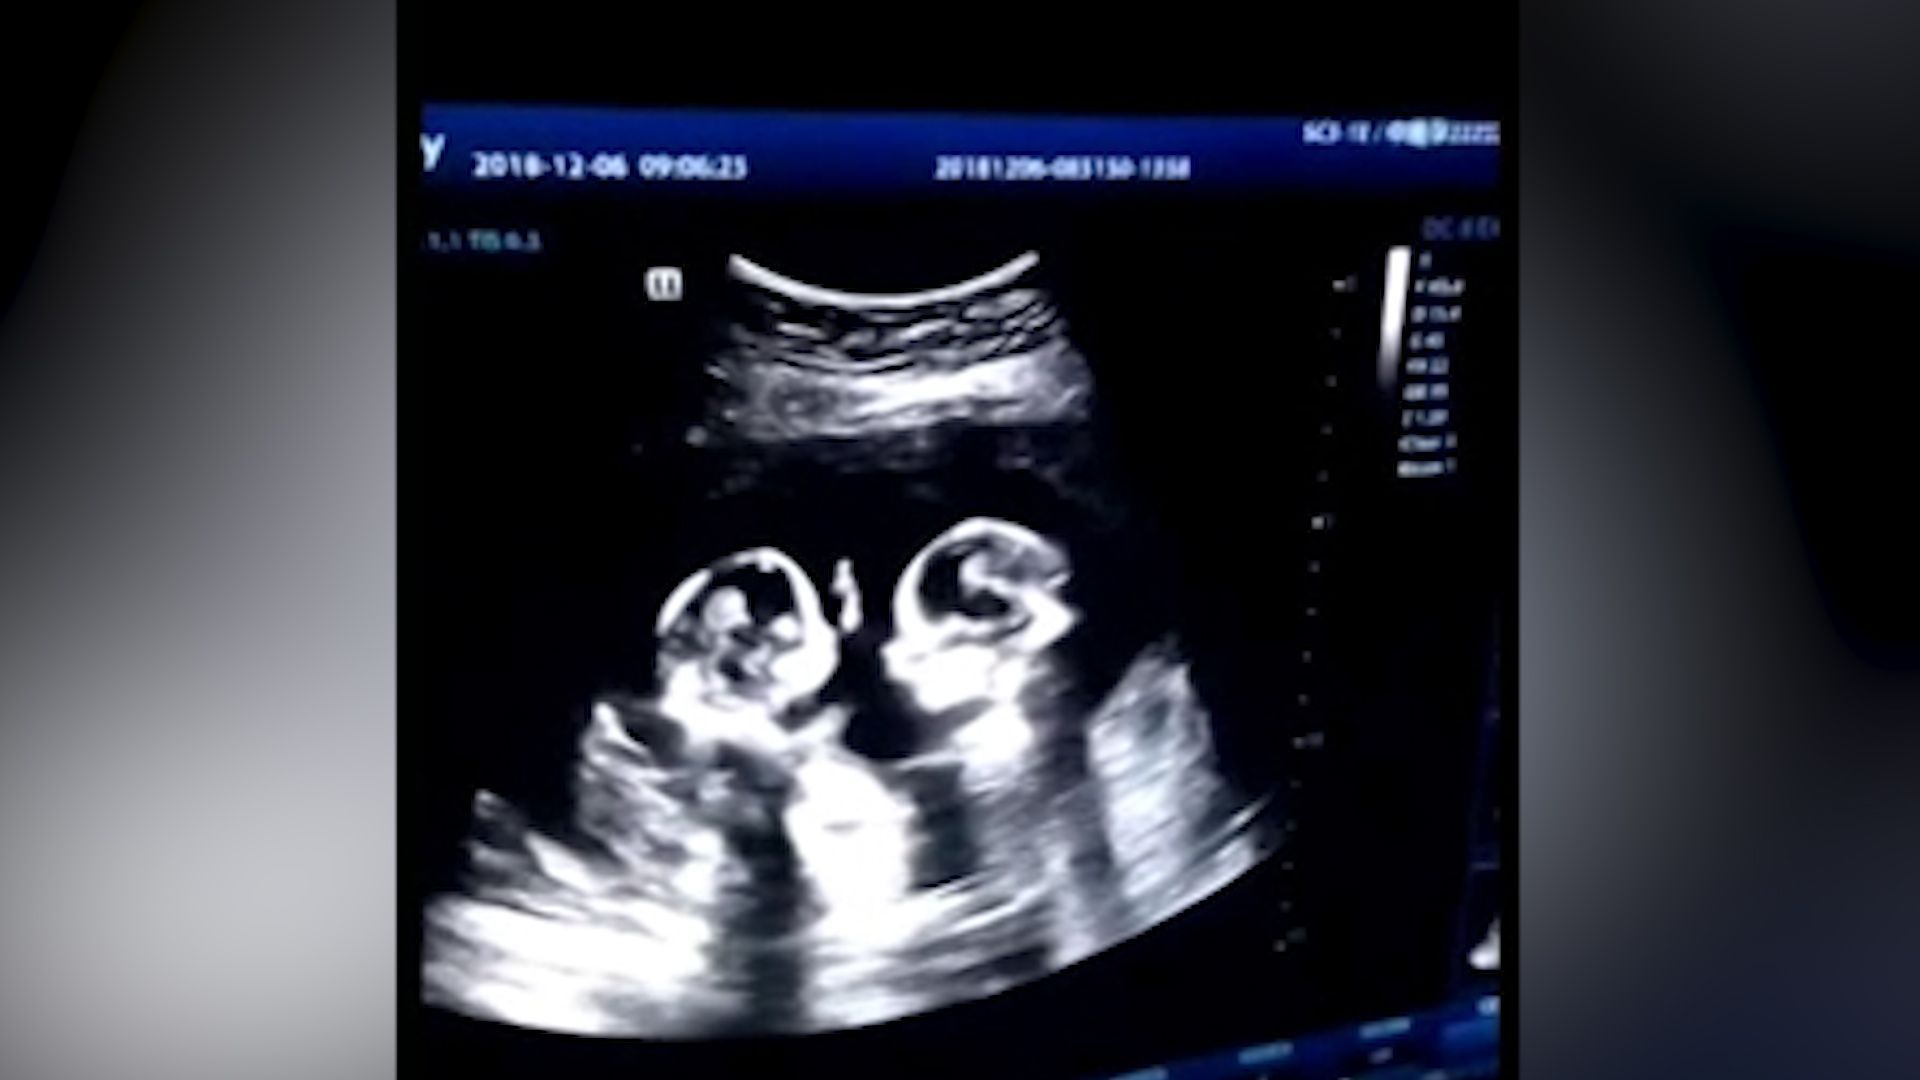 Boj o místo v děloze. “Hovory” dvojčat odhalil ultrazvuk